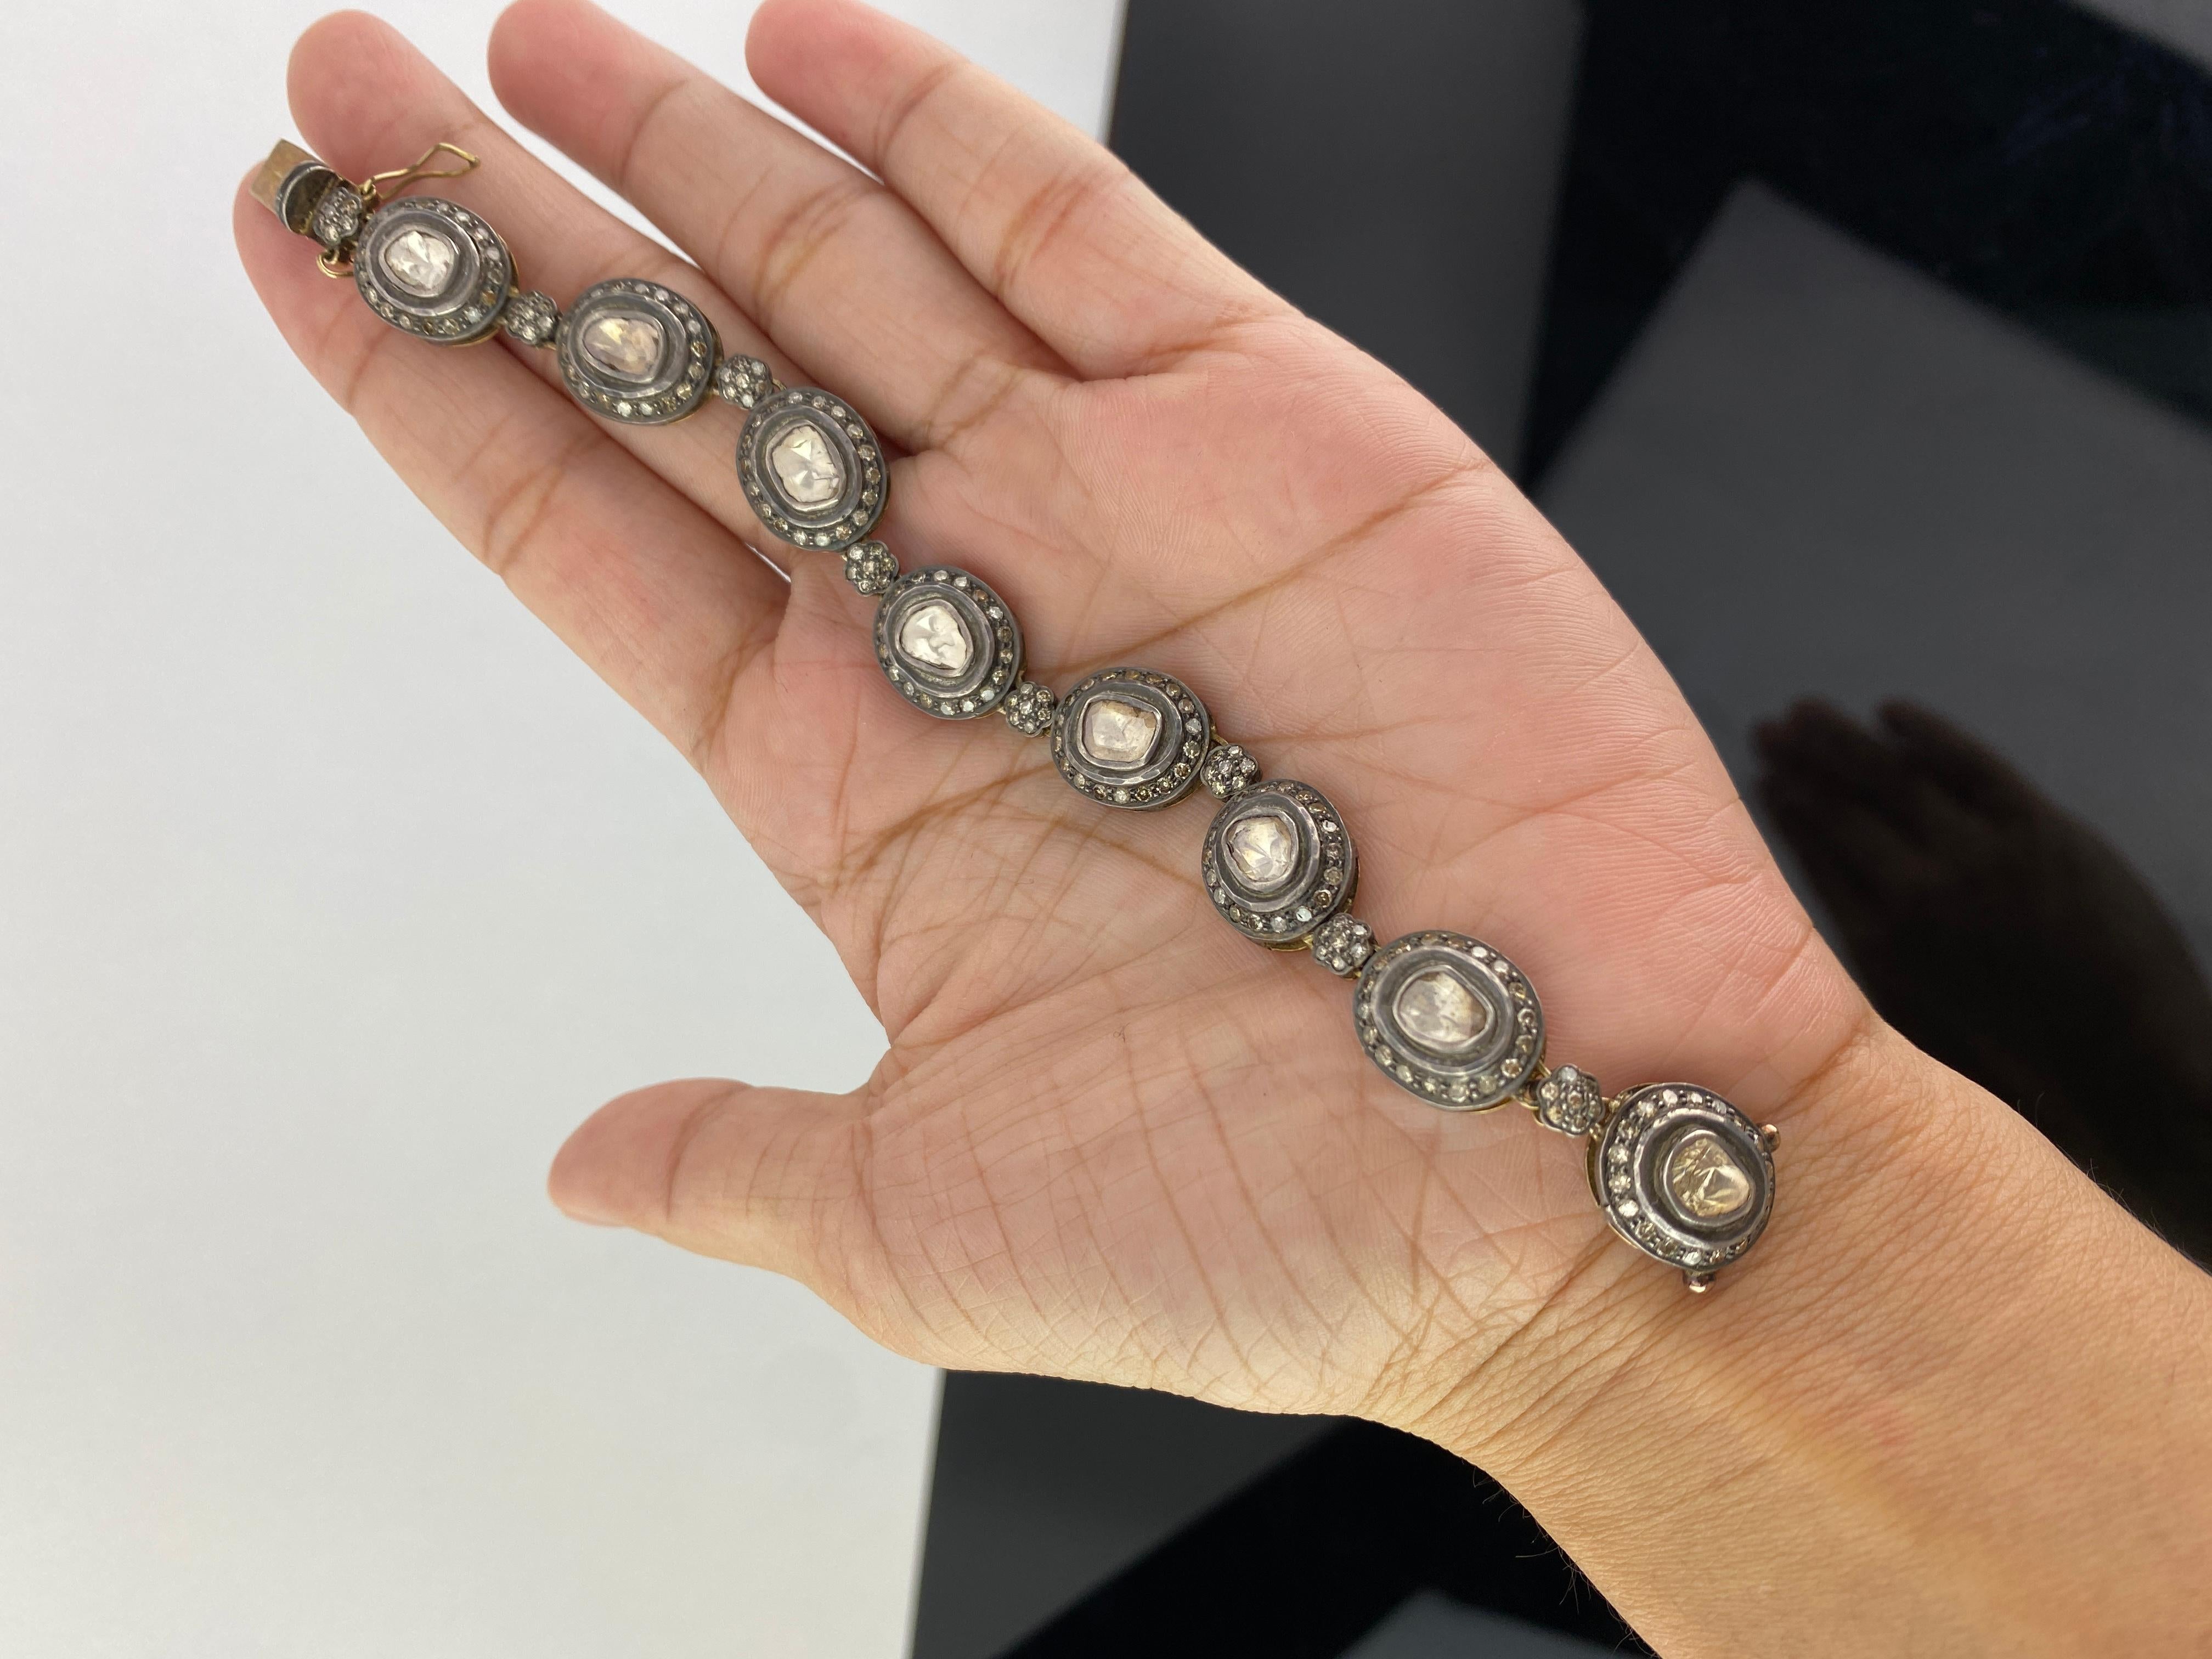 Setzen Sie ein Zeichen, wenn Sie dieses wunderschöne, handgefertigte Armband mit Diamanten im Rosenschliff tragen, das in Silber und vergoldet ist. Die Länge des Armbands beträgt 15,5 cm, kann aber geändert werden. 
Wir bieten kostenlosen Versand.